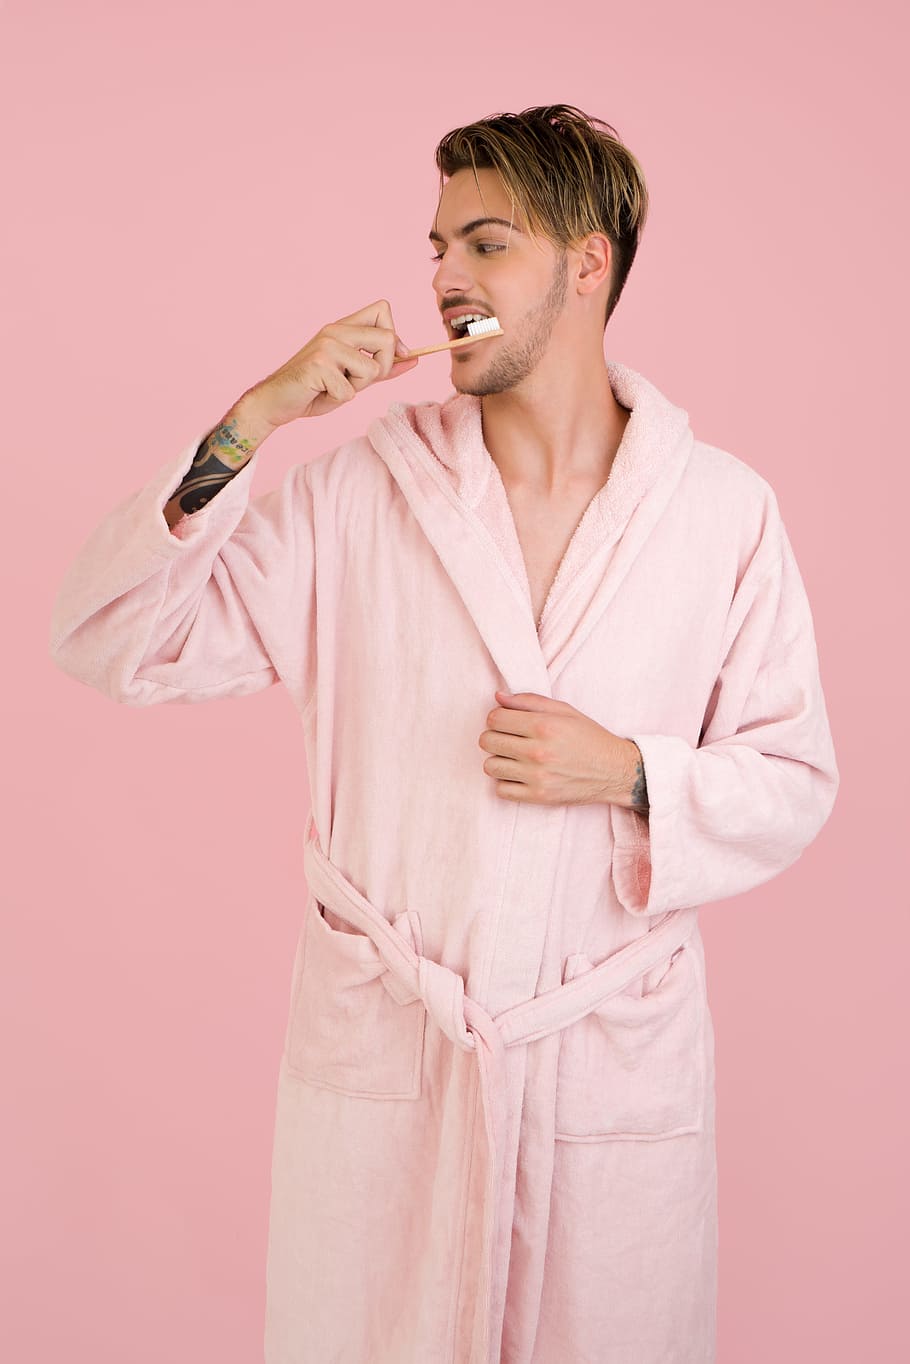 jubah mandi, pagi, menyikat gigi, pria, pria tampan, pink, latar belakang berwarna, foto studio, satu orang, di dalam ruangan